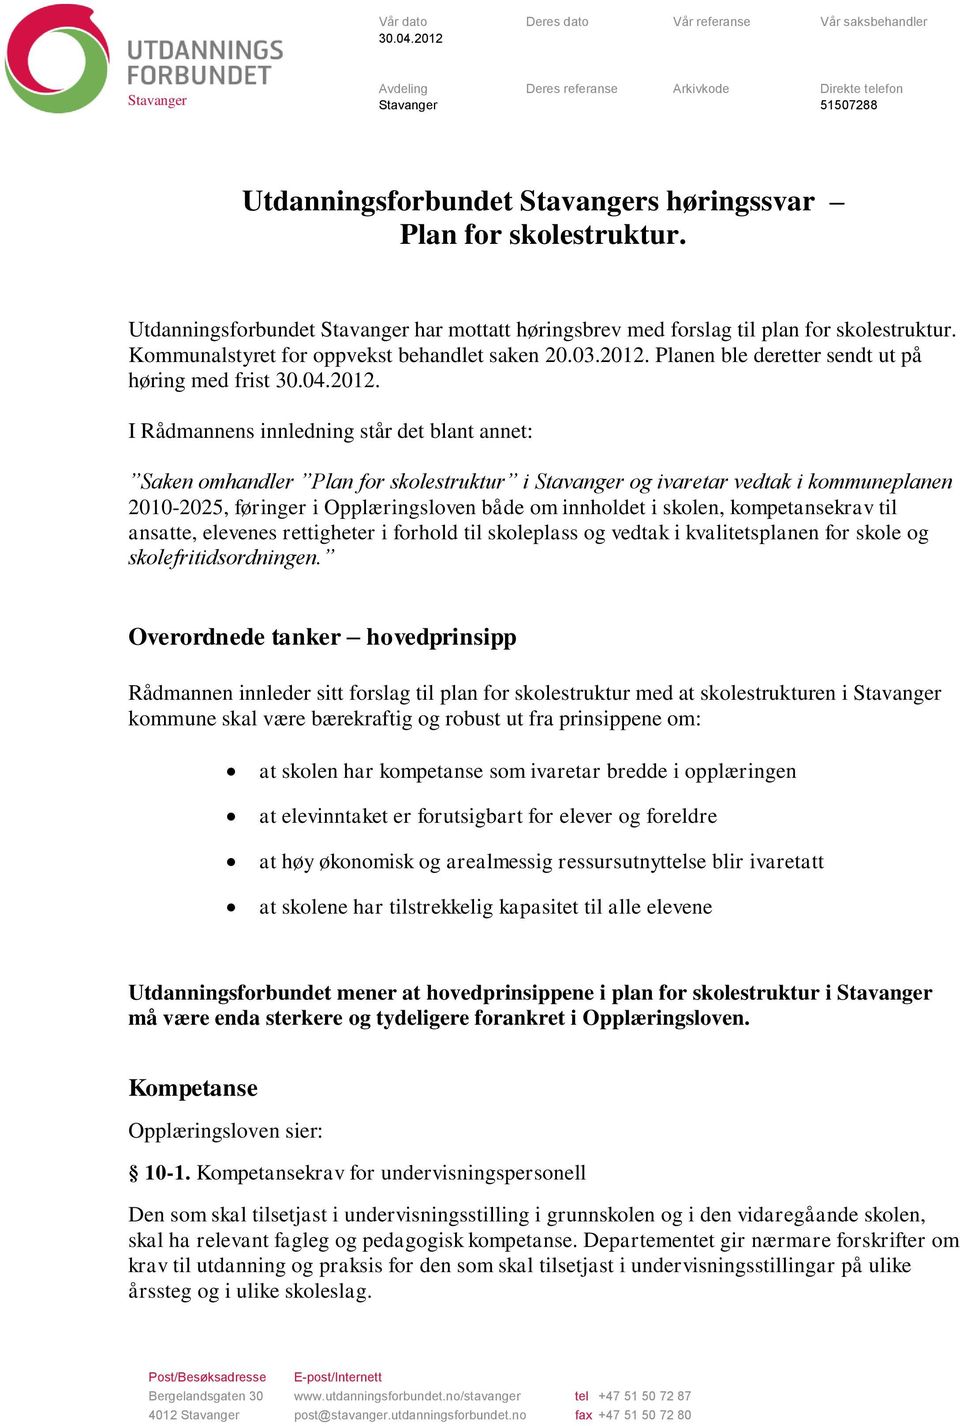 Utdanningsforbundet Stavanger har mottatt høringsbrev med forslag til plan for skolestruktur. Kommunalstyret for oppvekst behandlet saken 20.03.2012.